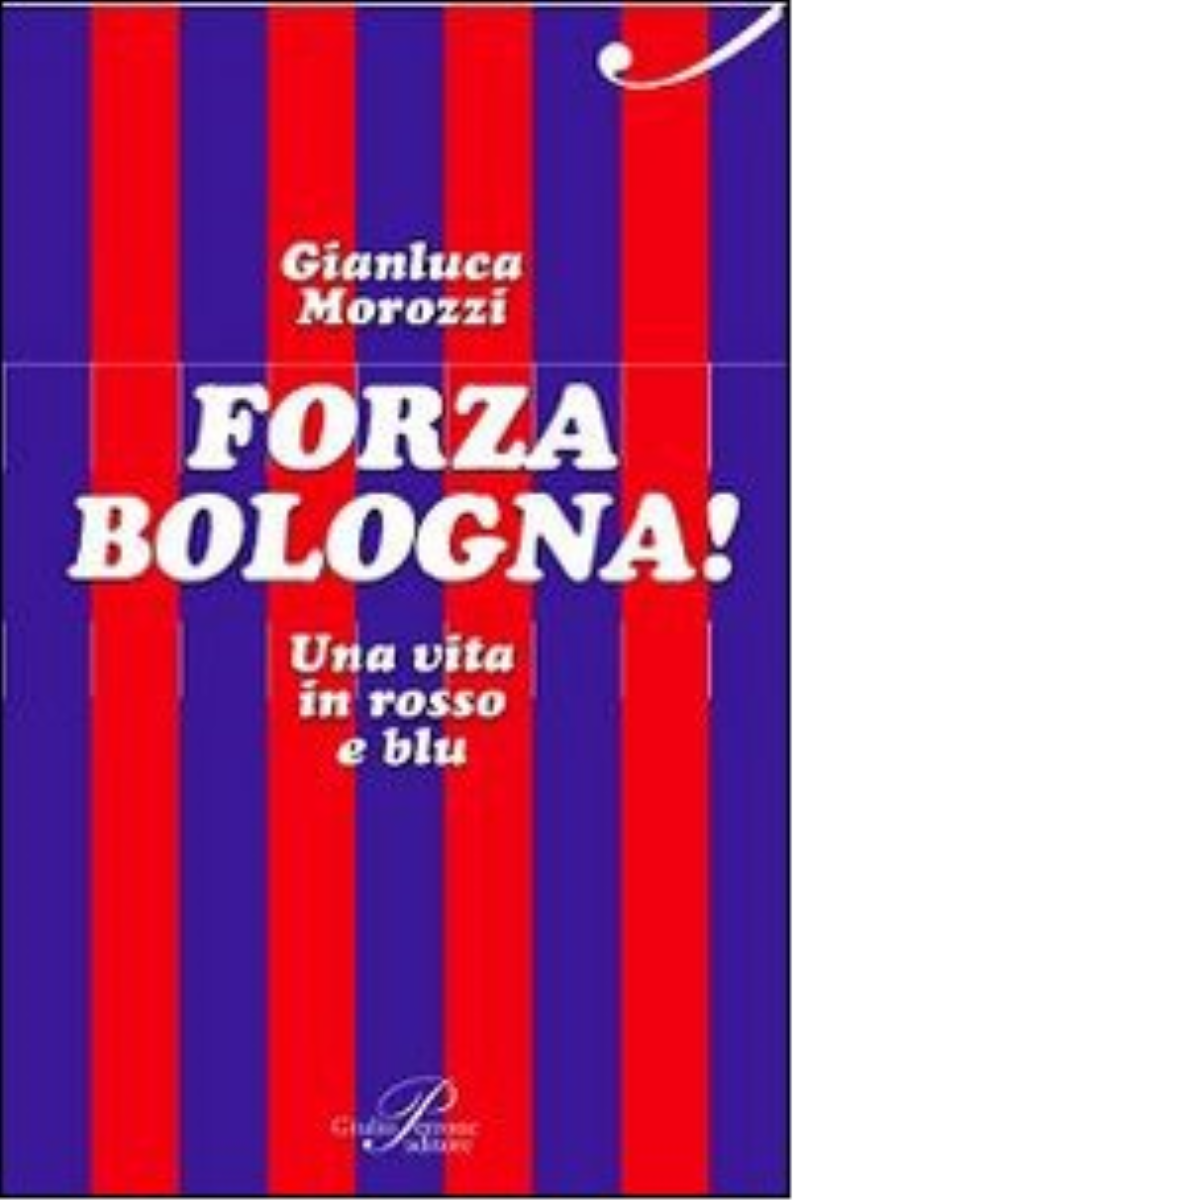 Forza Bologna! Una vita in rosso e blu - Gianluca Morozzi - Perrone, 2014 libro usato